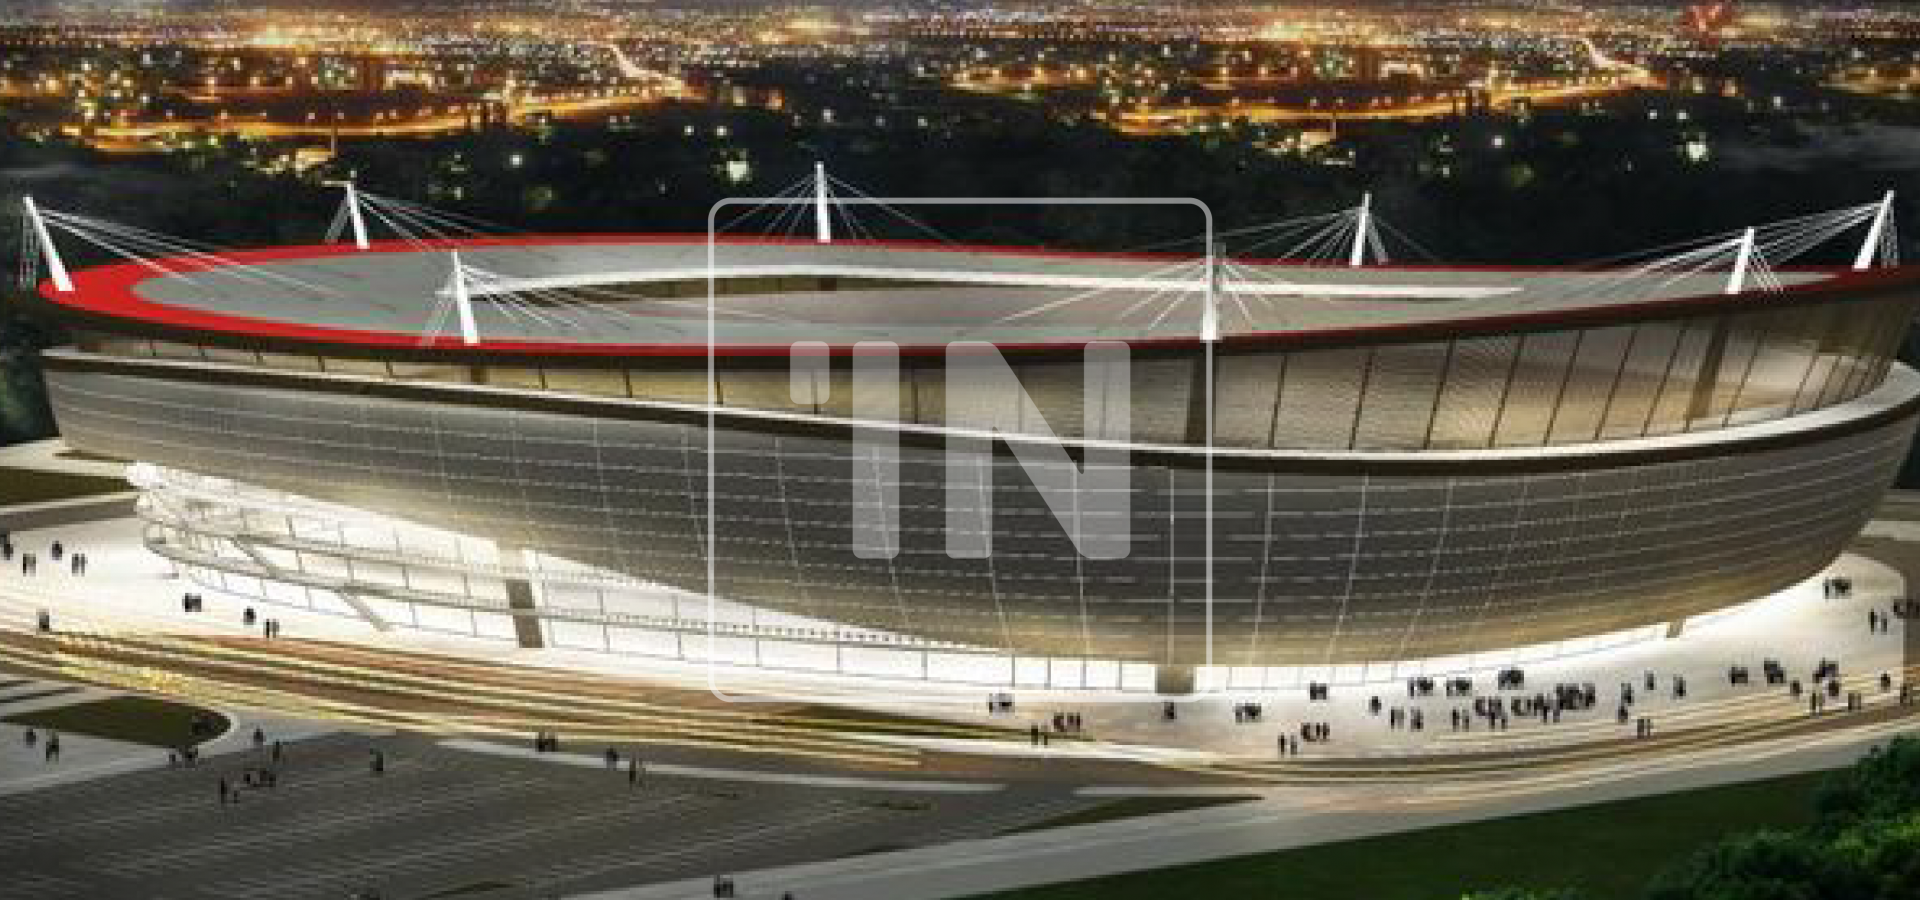 Eskişehir Stadium